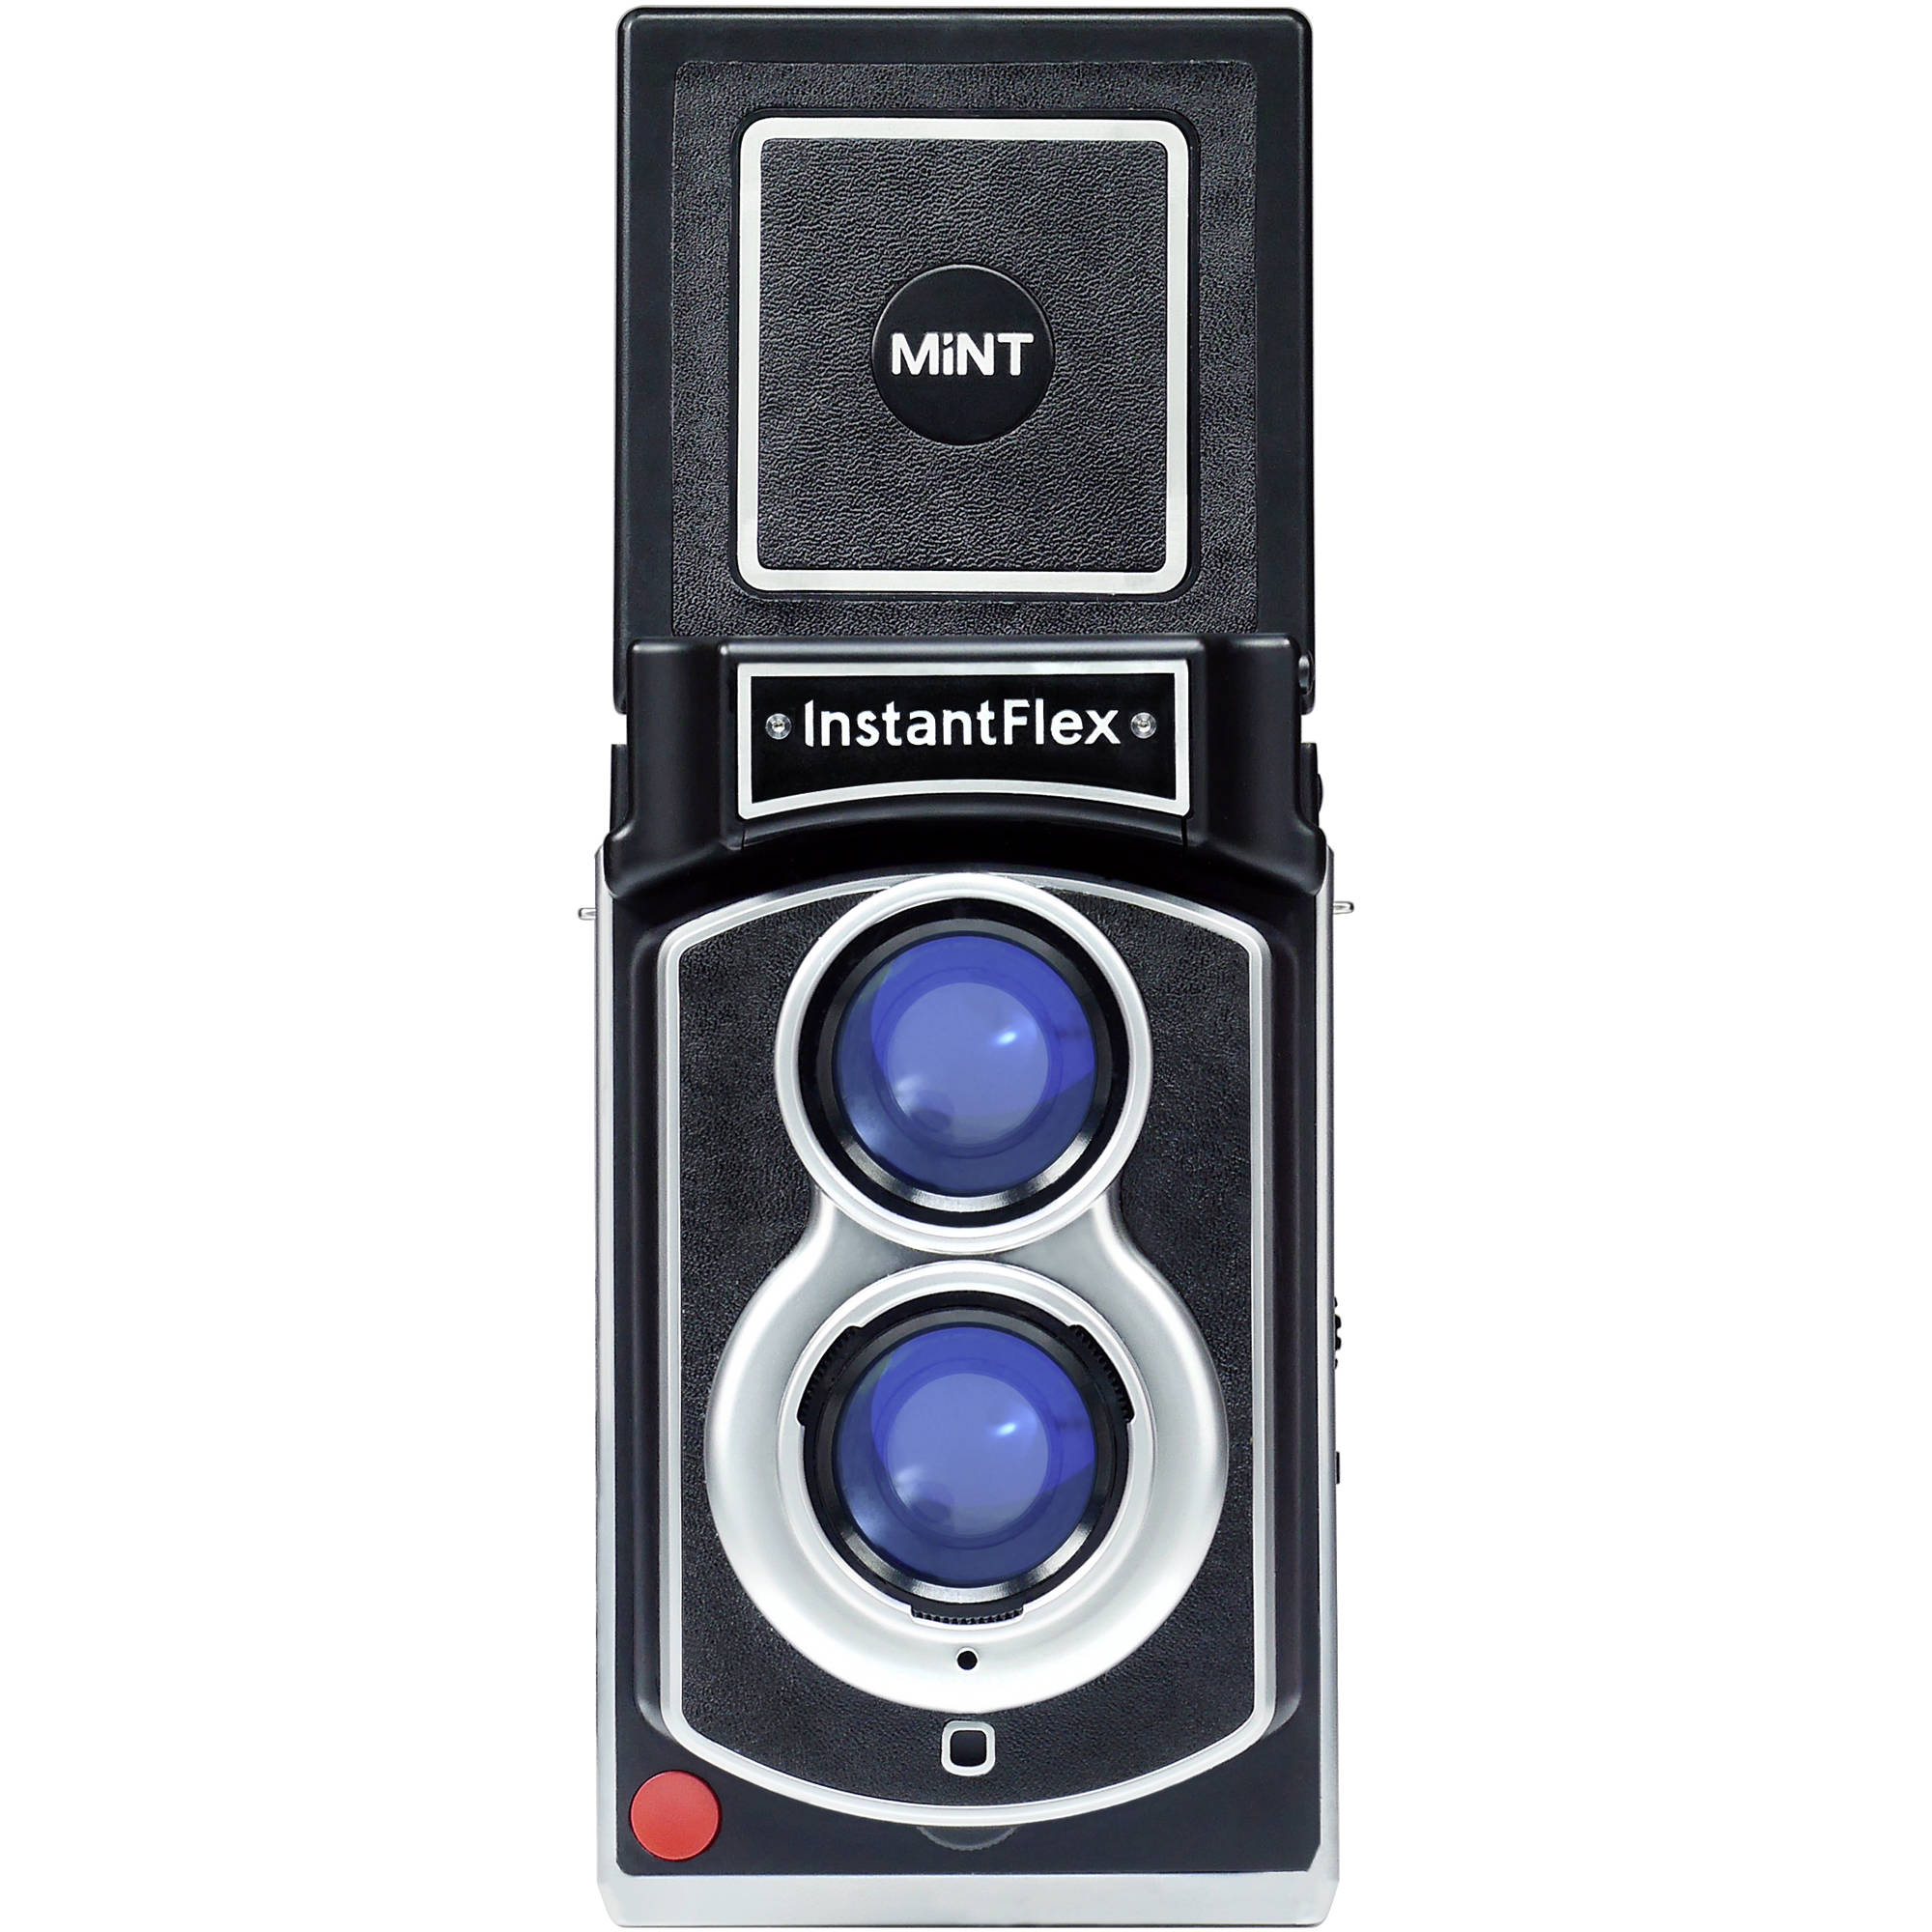 Mint Camera InstantFlex TL70 2.0 Cámara de película instantánea